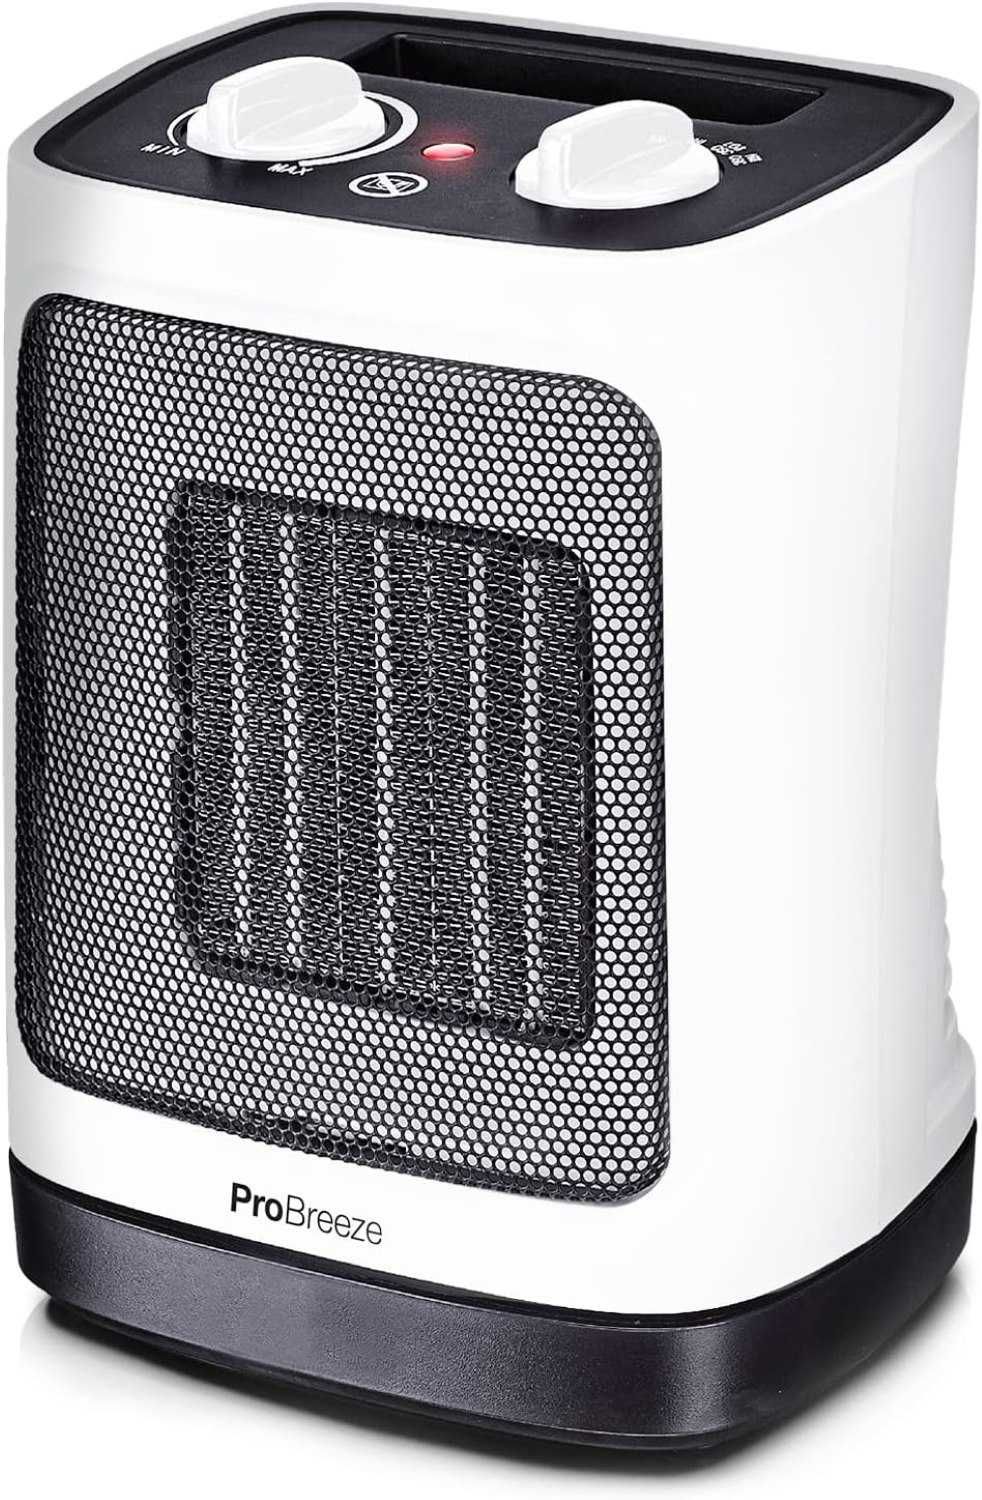 Ceramiczny termowentylator Pro Breeze 2000 W